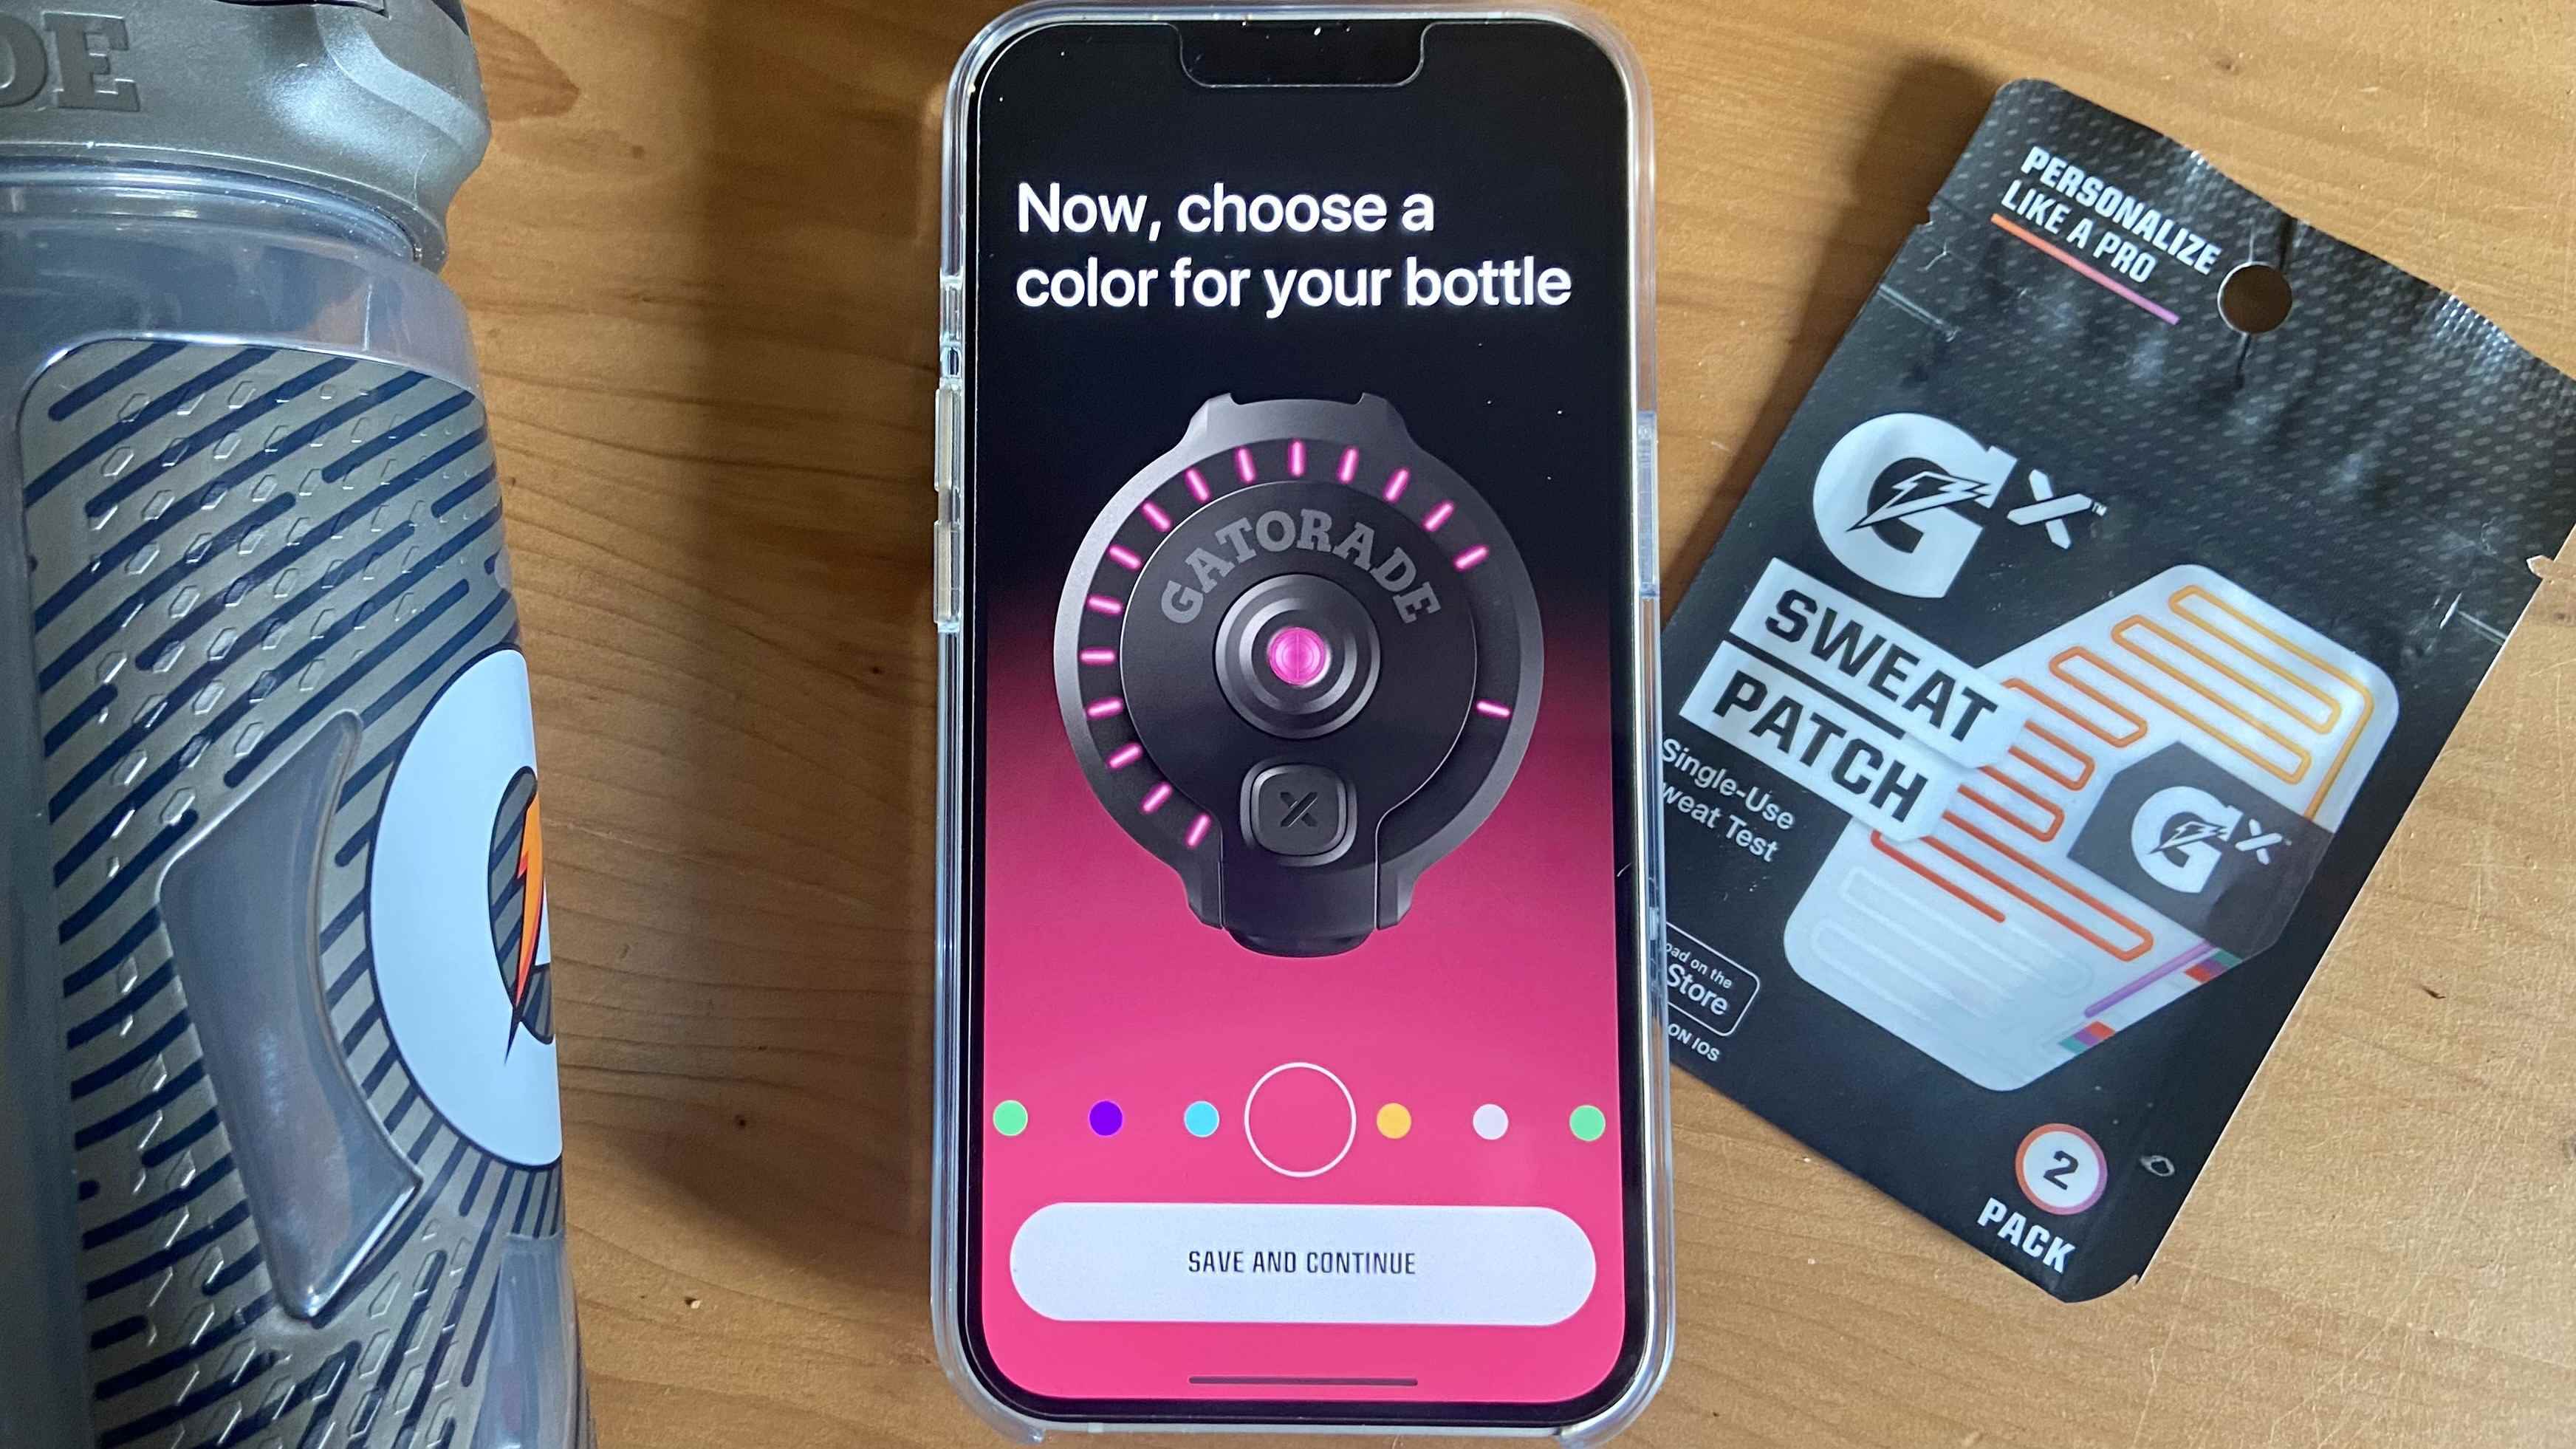 Gatorade Smart Gx Bottle uygulamasının bir fotoğrafı